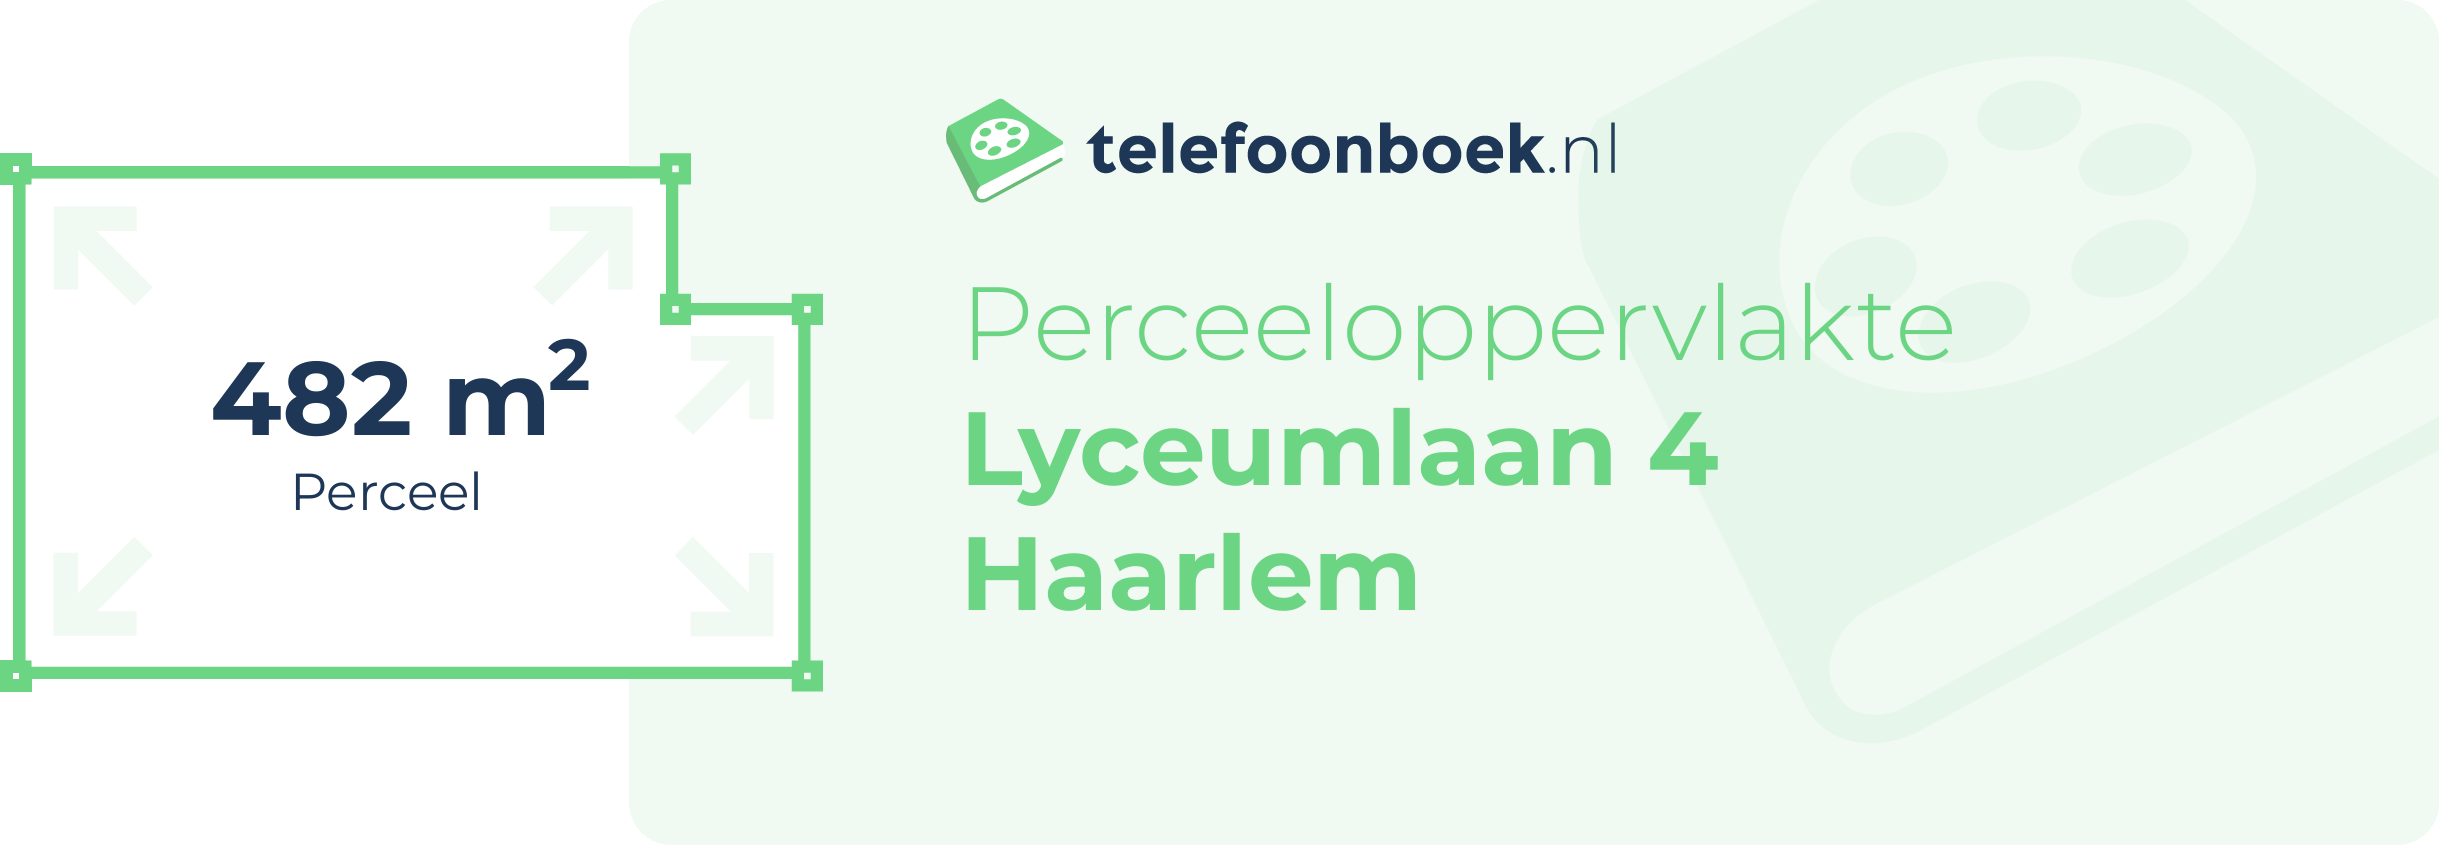 Perceeloppervlakte Lyceumlaan 4 Haarlem